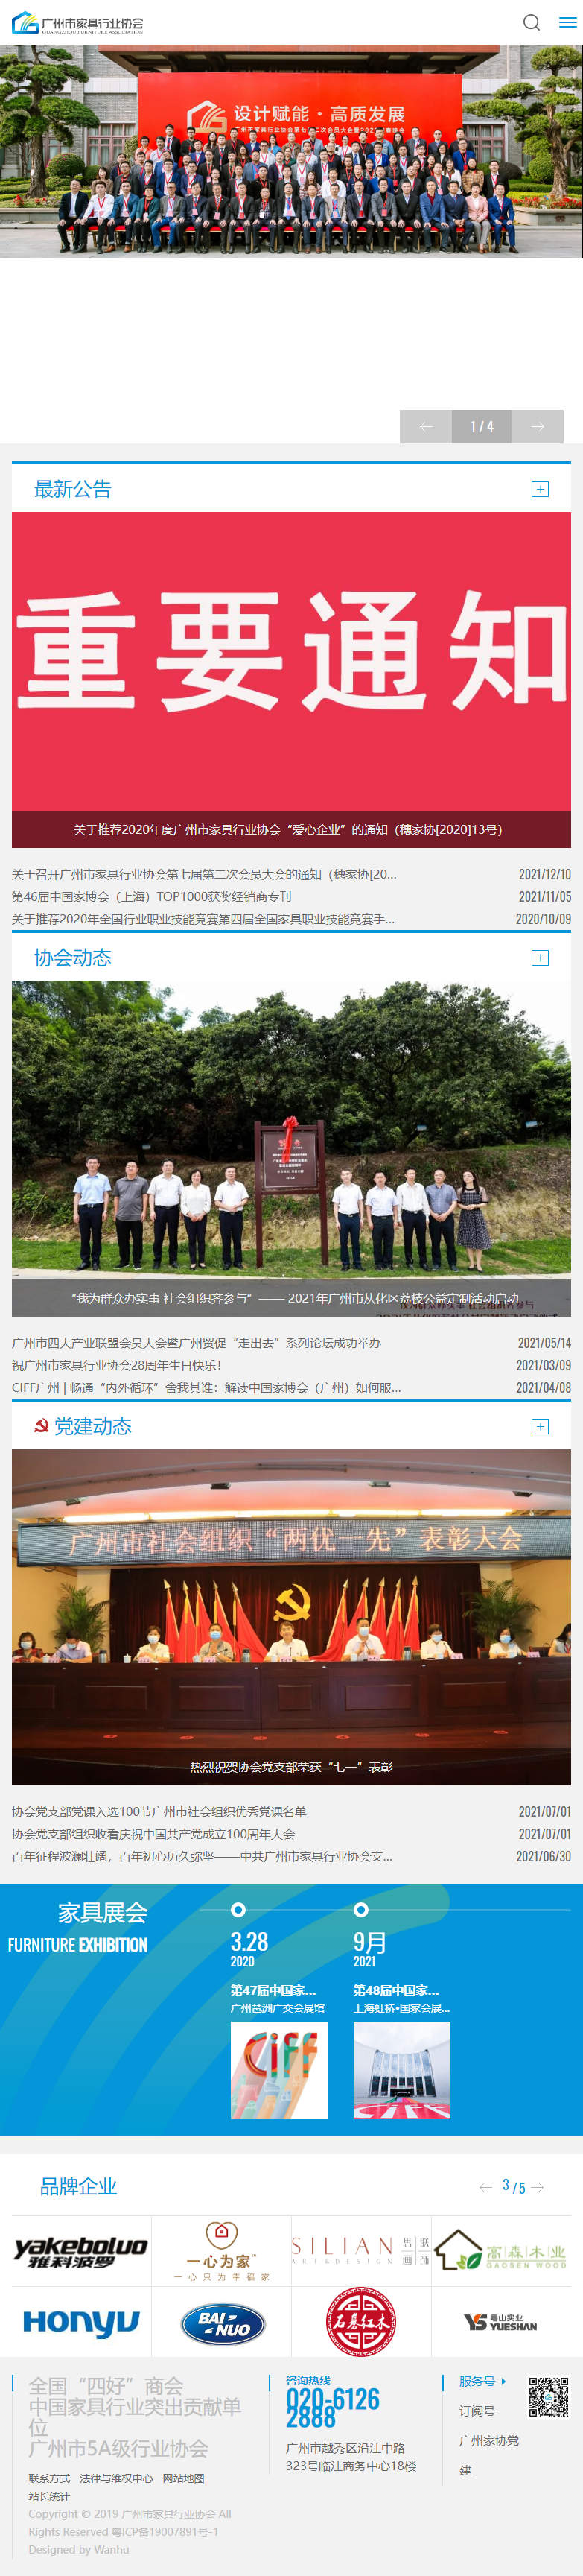 广州市家具行业协会网站案例